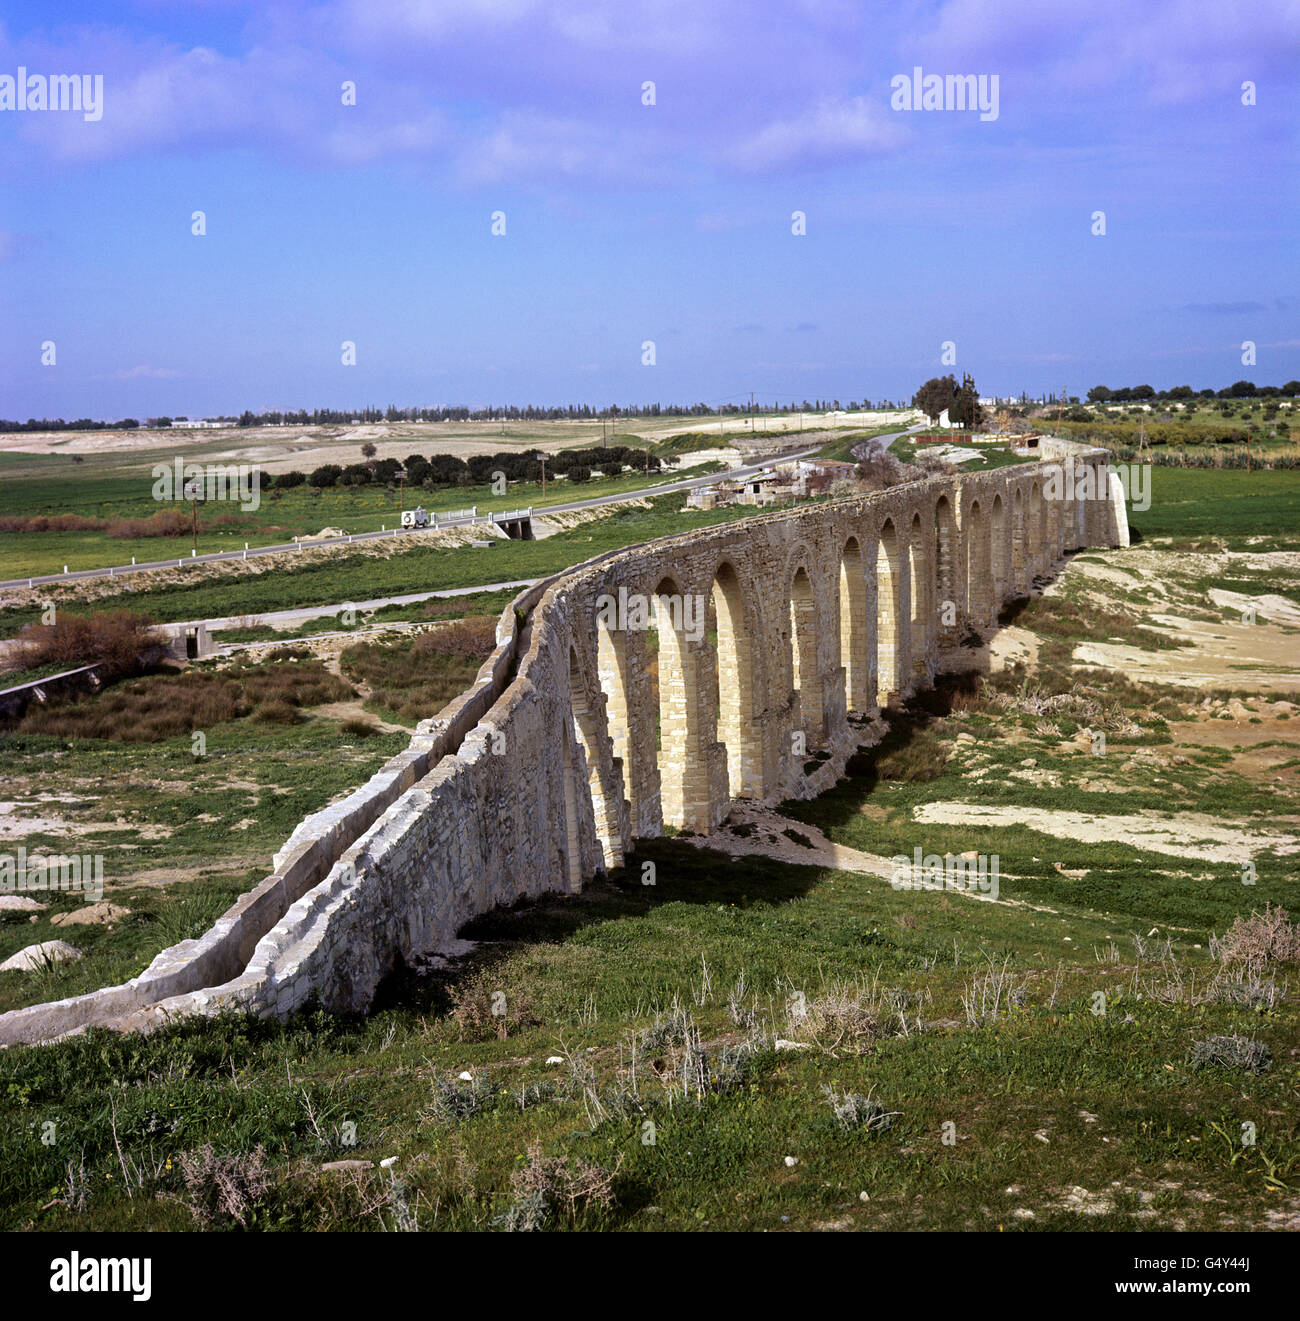 Travel Stock - Zypern. Das römische Aquädukt, eine Viertelmeile lang, auf der Straße nach Nikosia von Limassol, Zypern Stockfoto